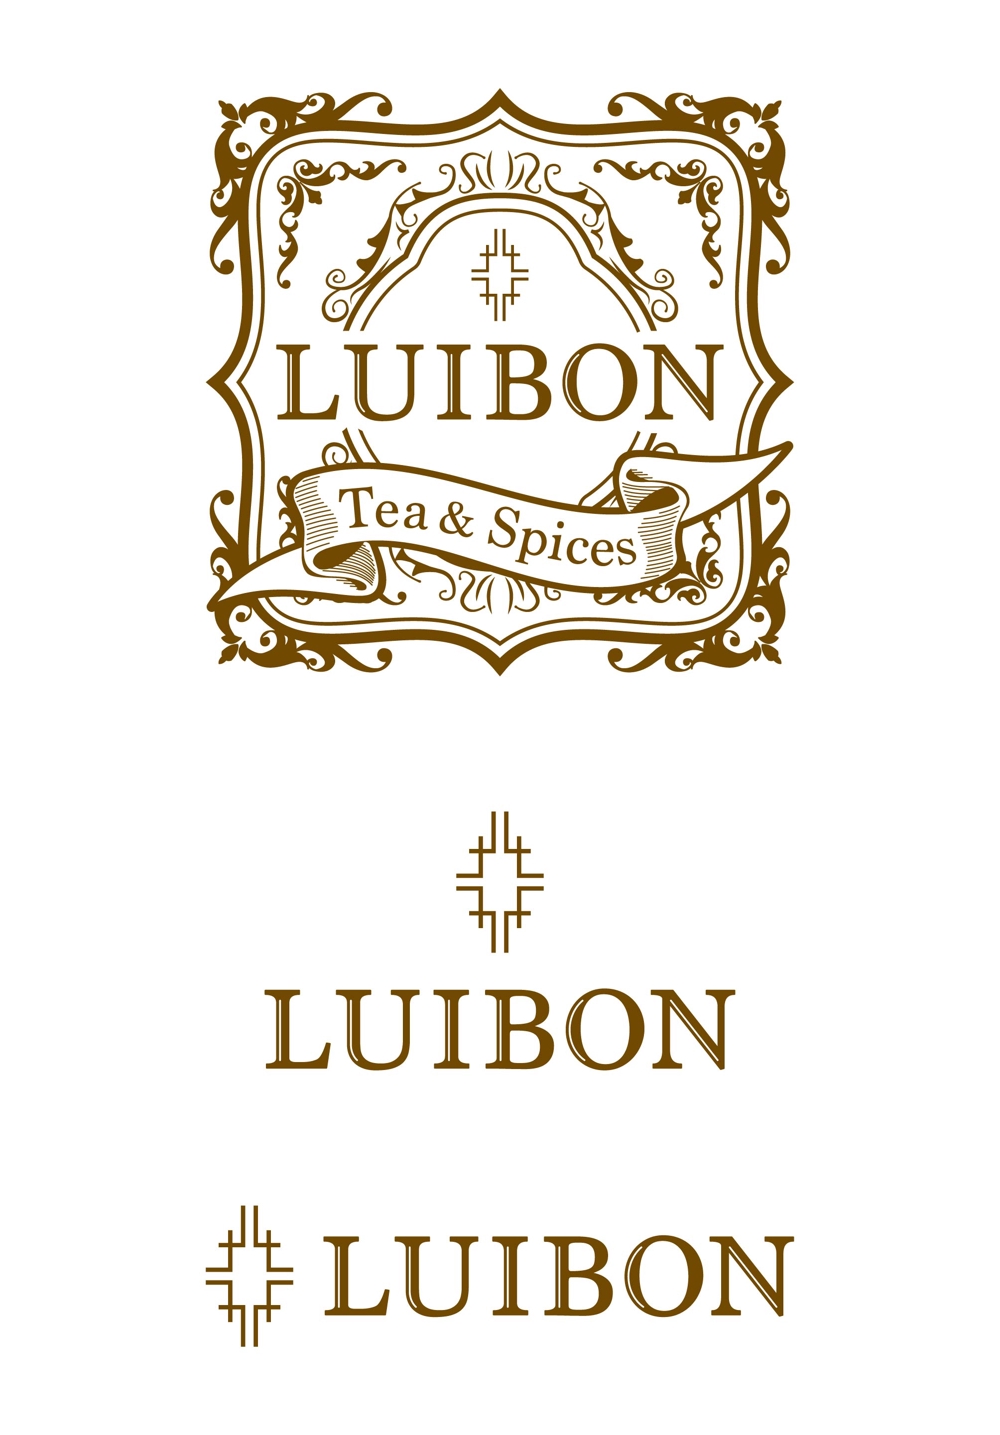 【ロゴ】紅茶・スパイスメーカー「LUIBON」様